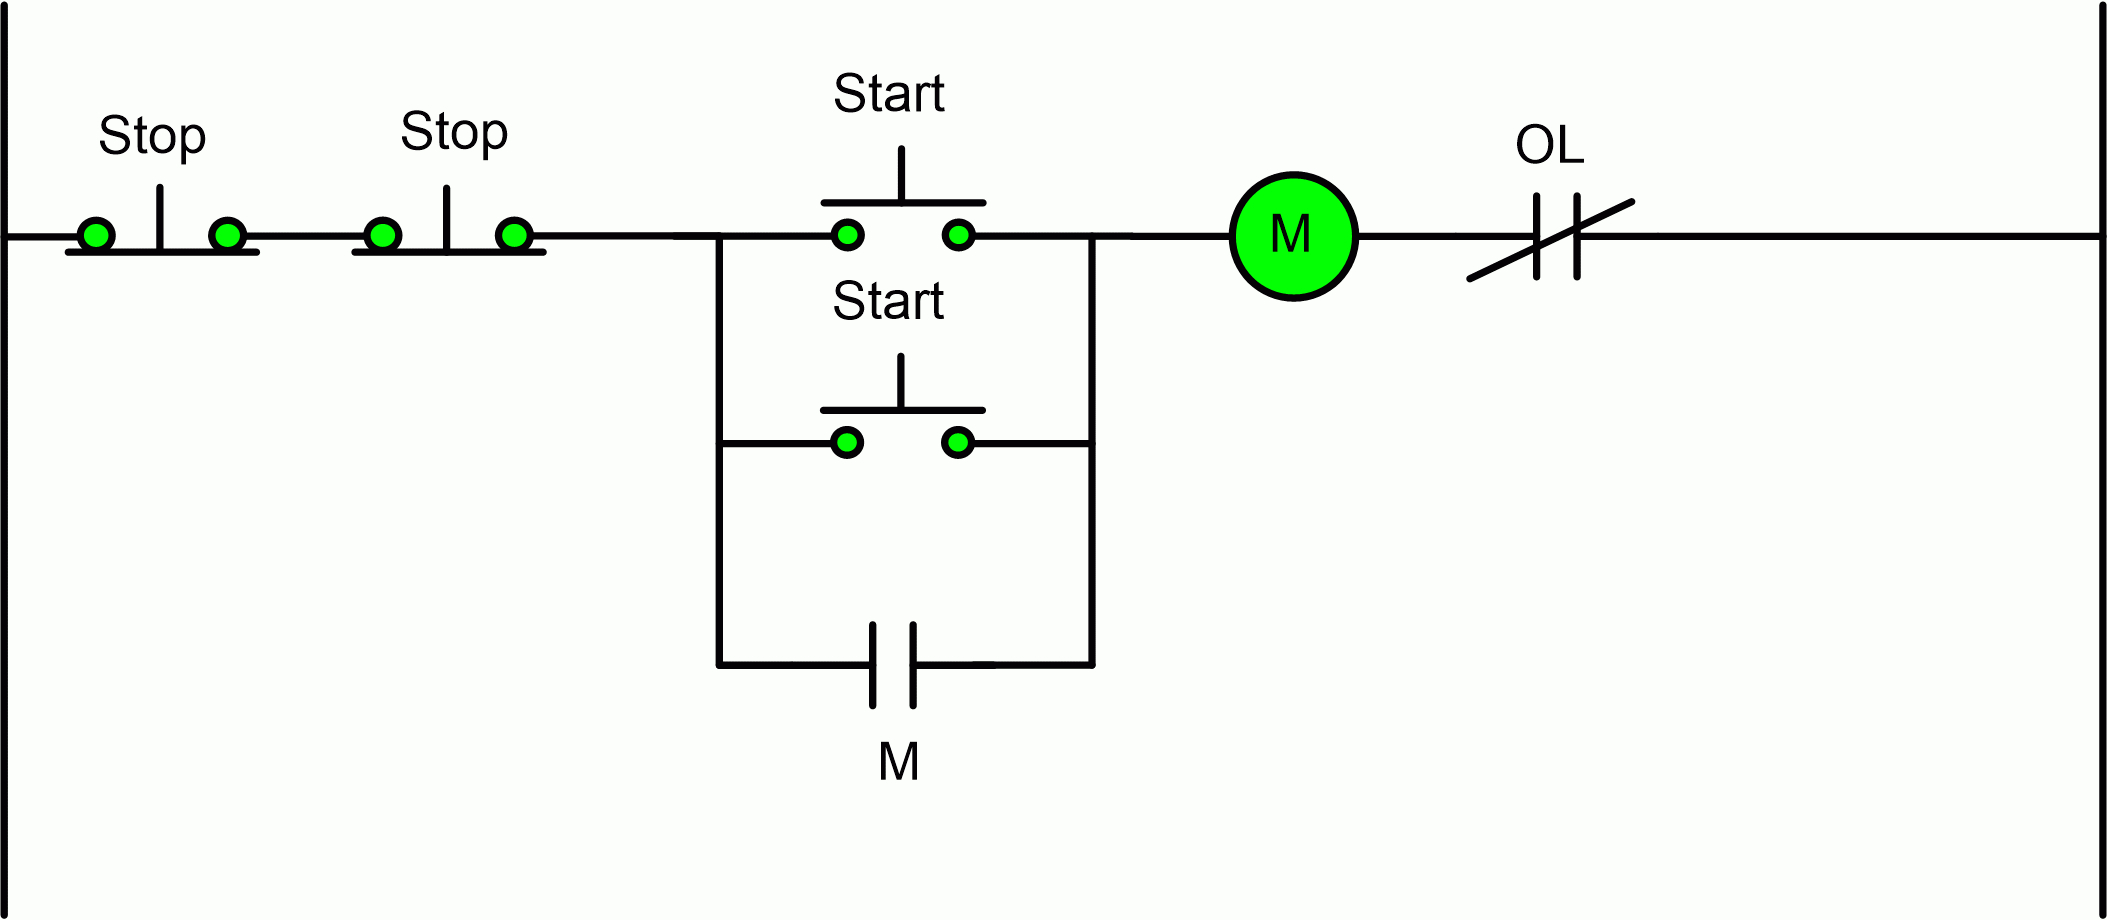 Wiring Diagram Start Stop Motor Control - Wiring Diagram Data - Motor Starter Wiring Diagram Start Stop